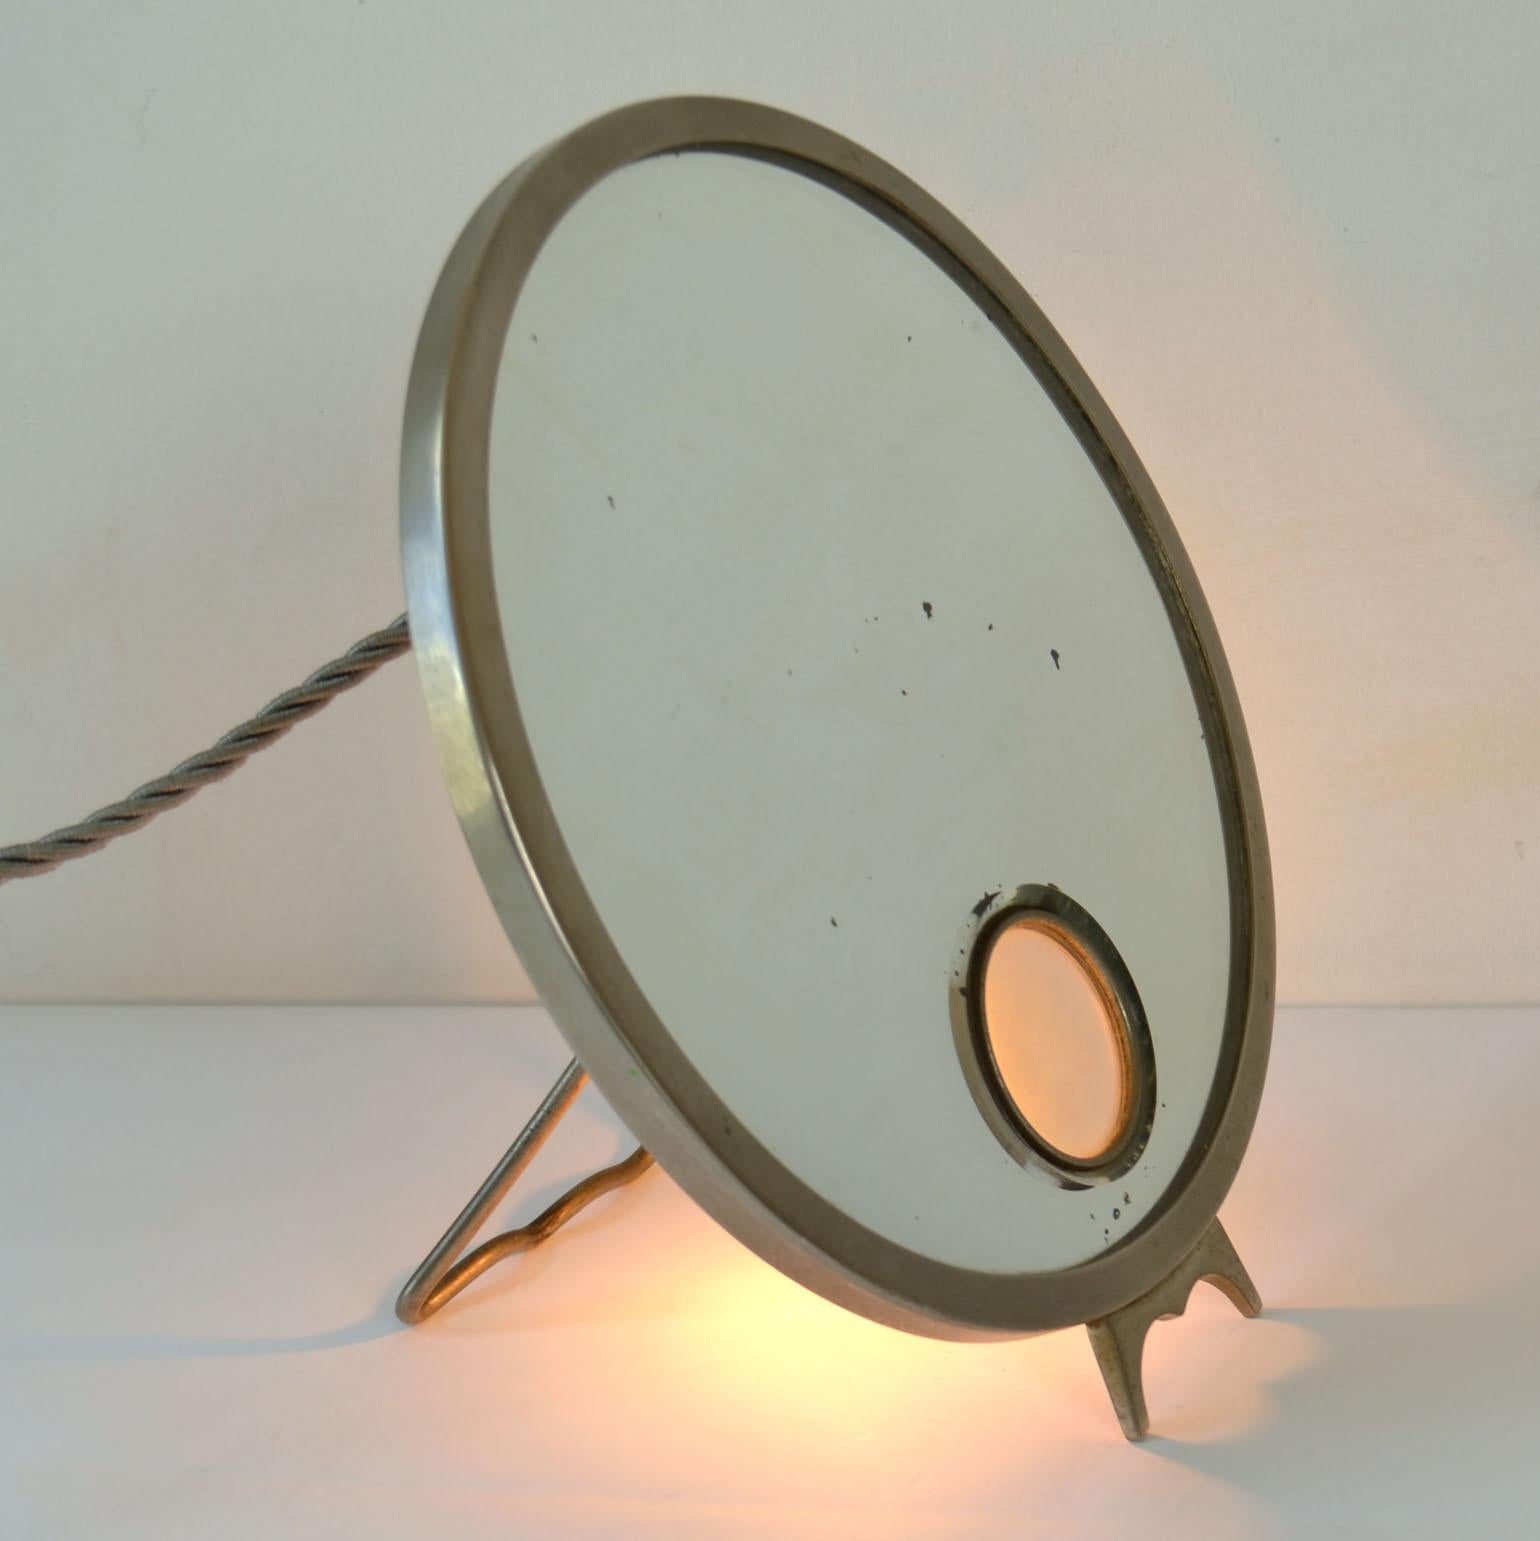 Der verstellbare Waschtischspiegel Brot Mirophar mit vernickeltem Rahmen und beleuchtetem Glas wurde 1927 entworfen. Die Innovation des Brot war das Konzept eines beleuchteten Vergrößerungsspiegels mit Opalglas. Sie wurden entwickelt, um das